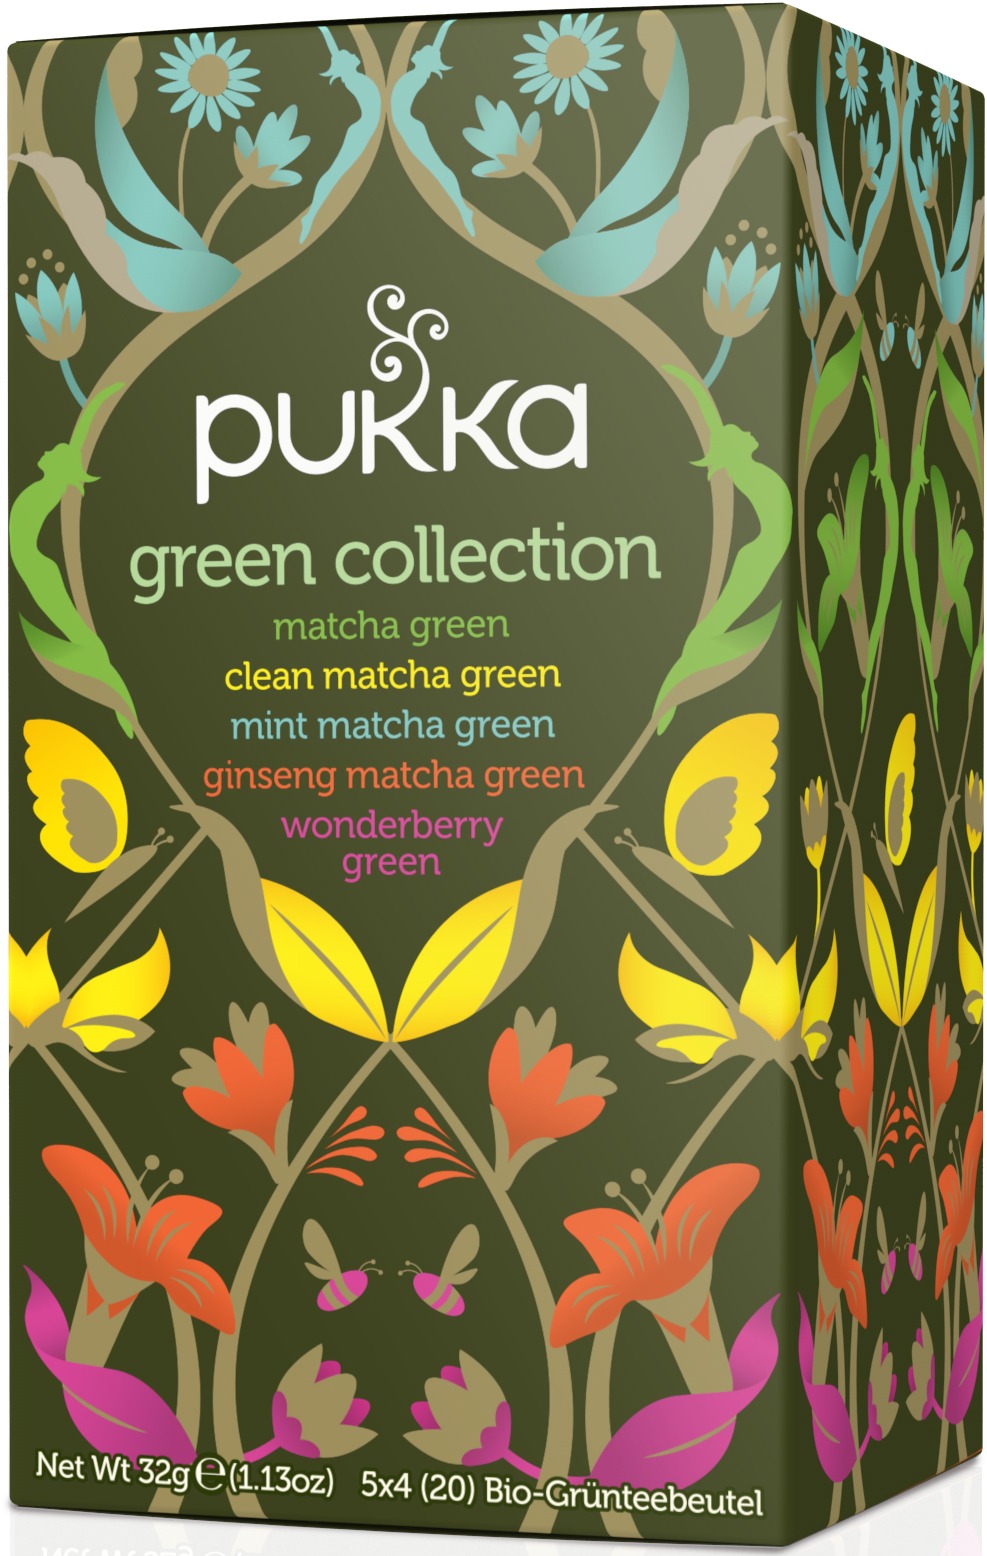 Pukka Green Collection Tea